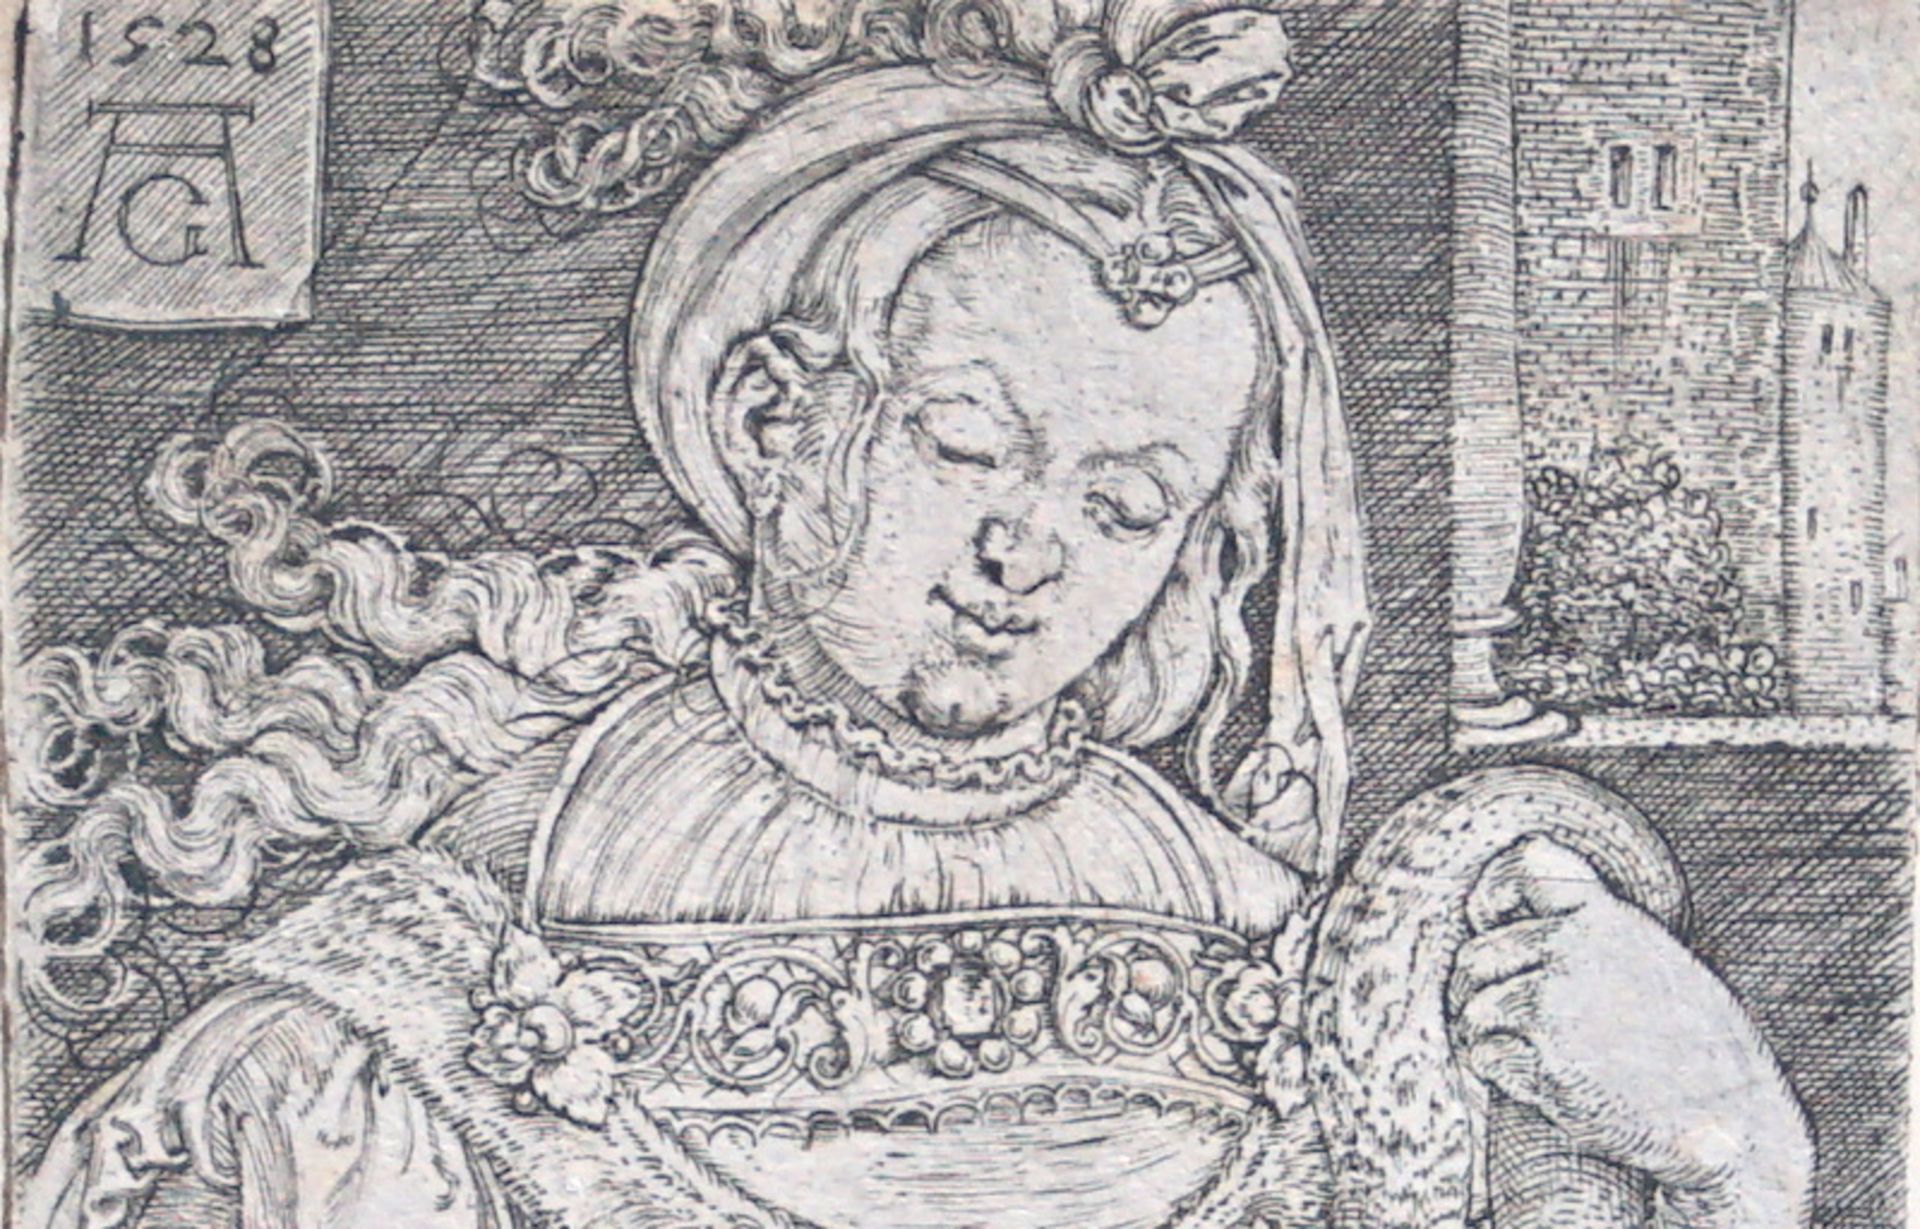 Aldrgrever, Heinrich: Intemperantia - Die Unmäßigkeit (1528) - Image 2 of 3